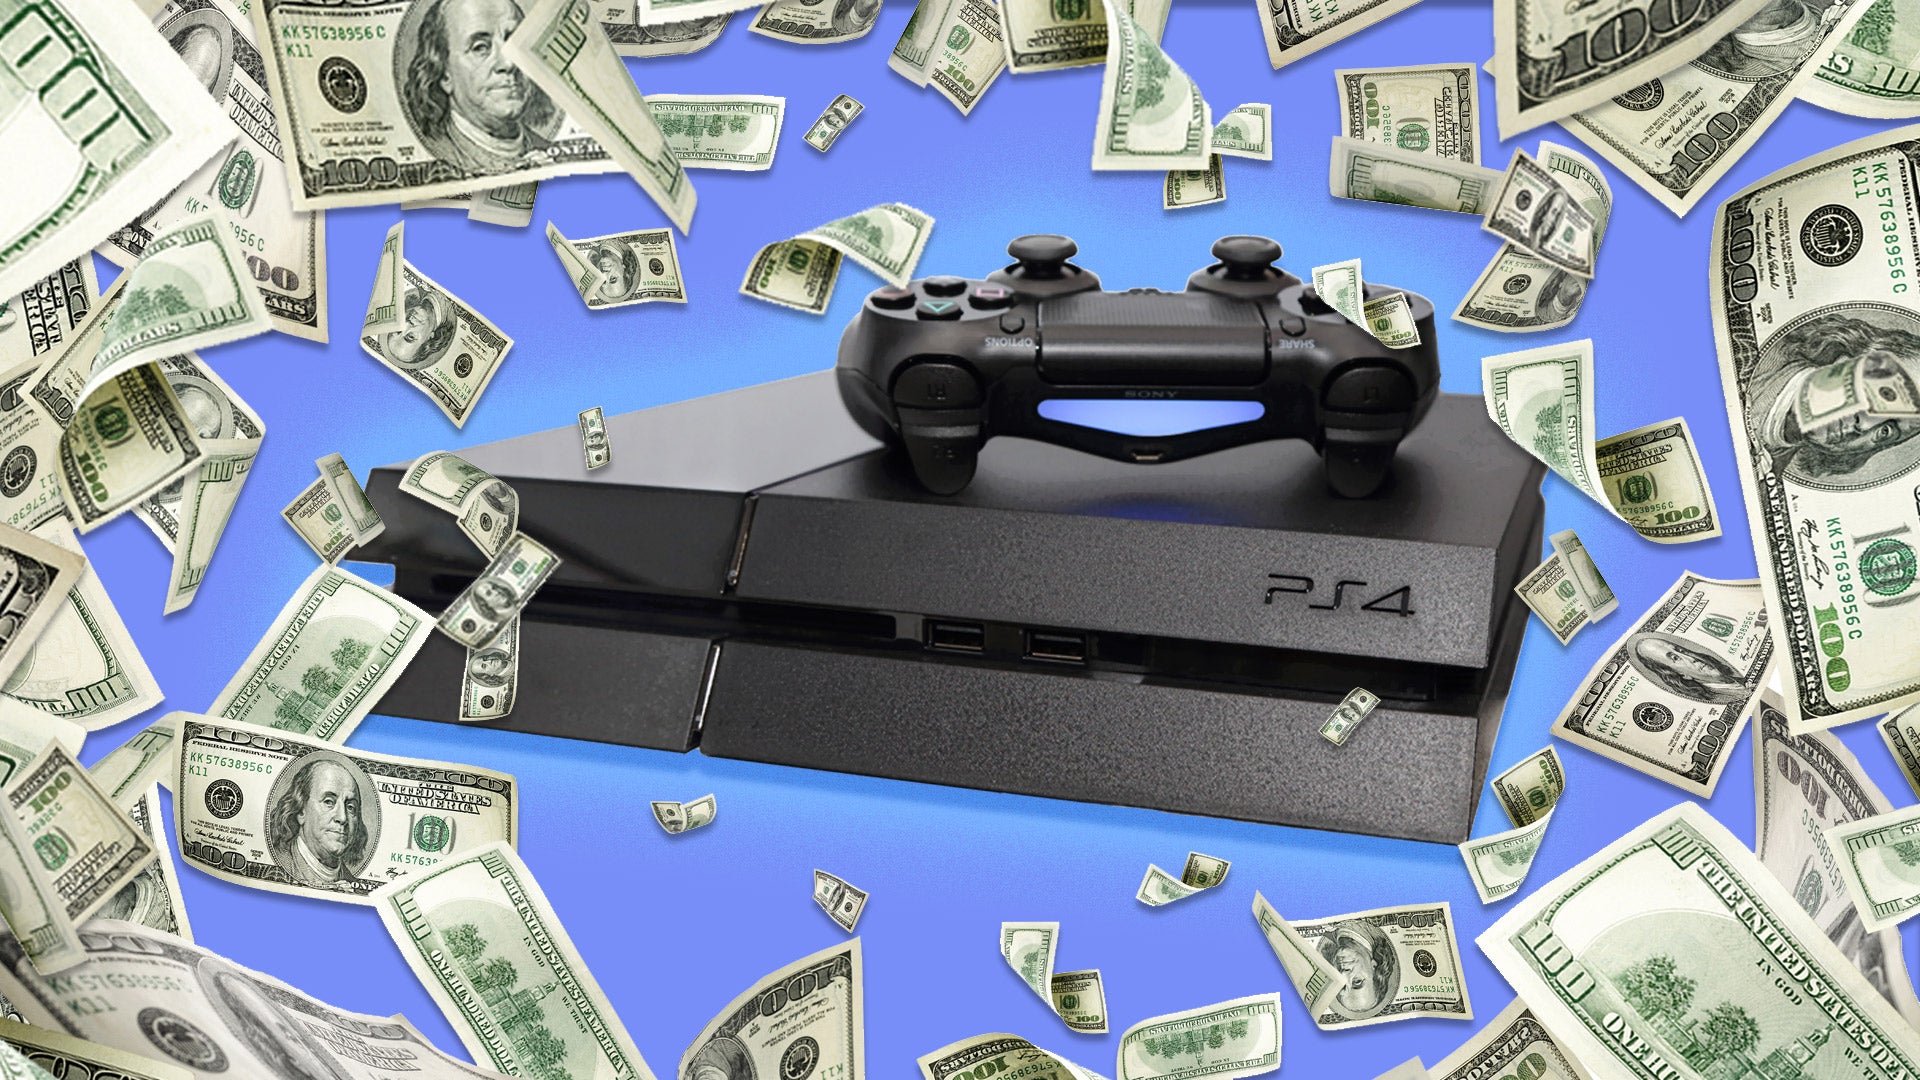 PS4 wordt omringd door tonnen geld.